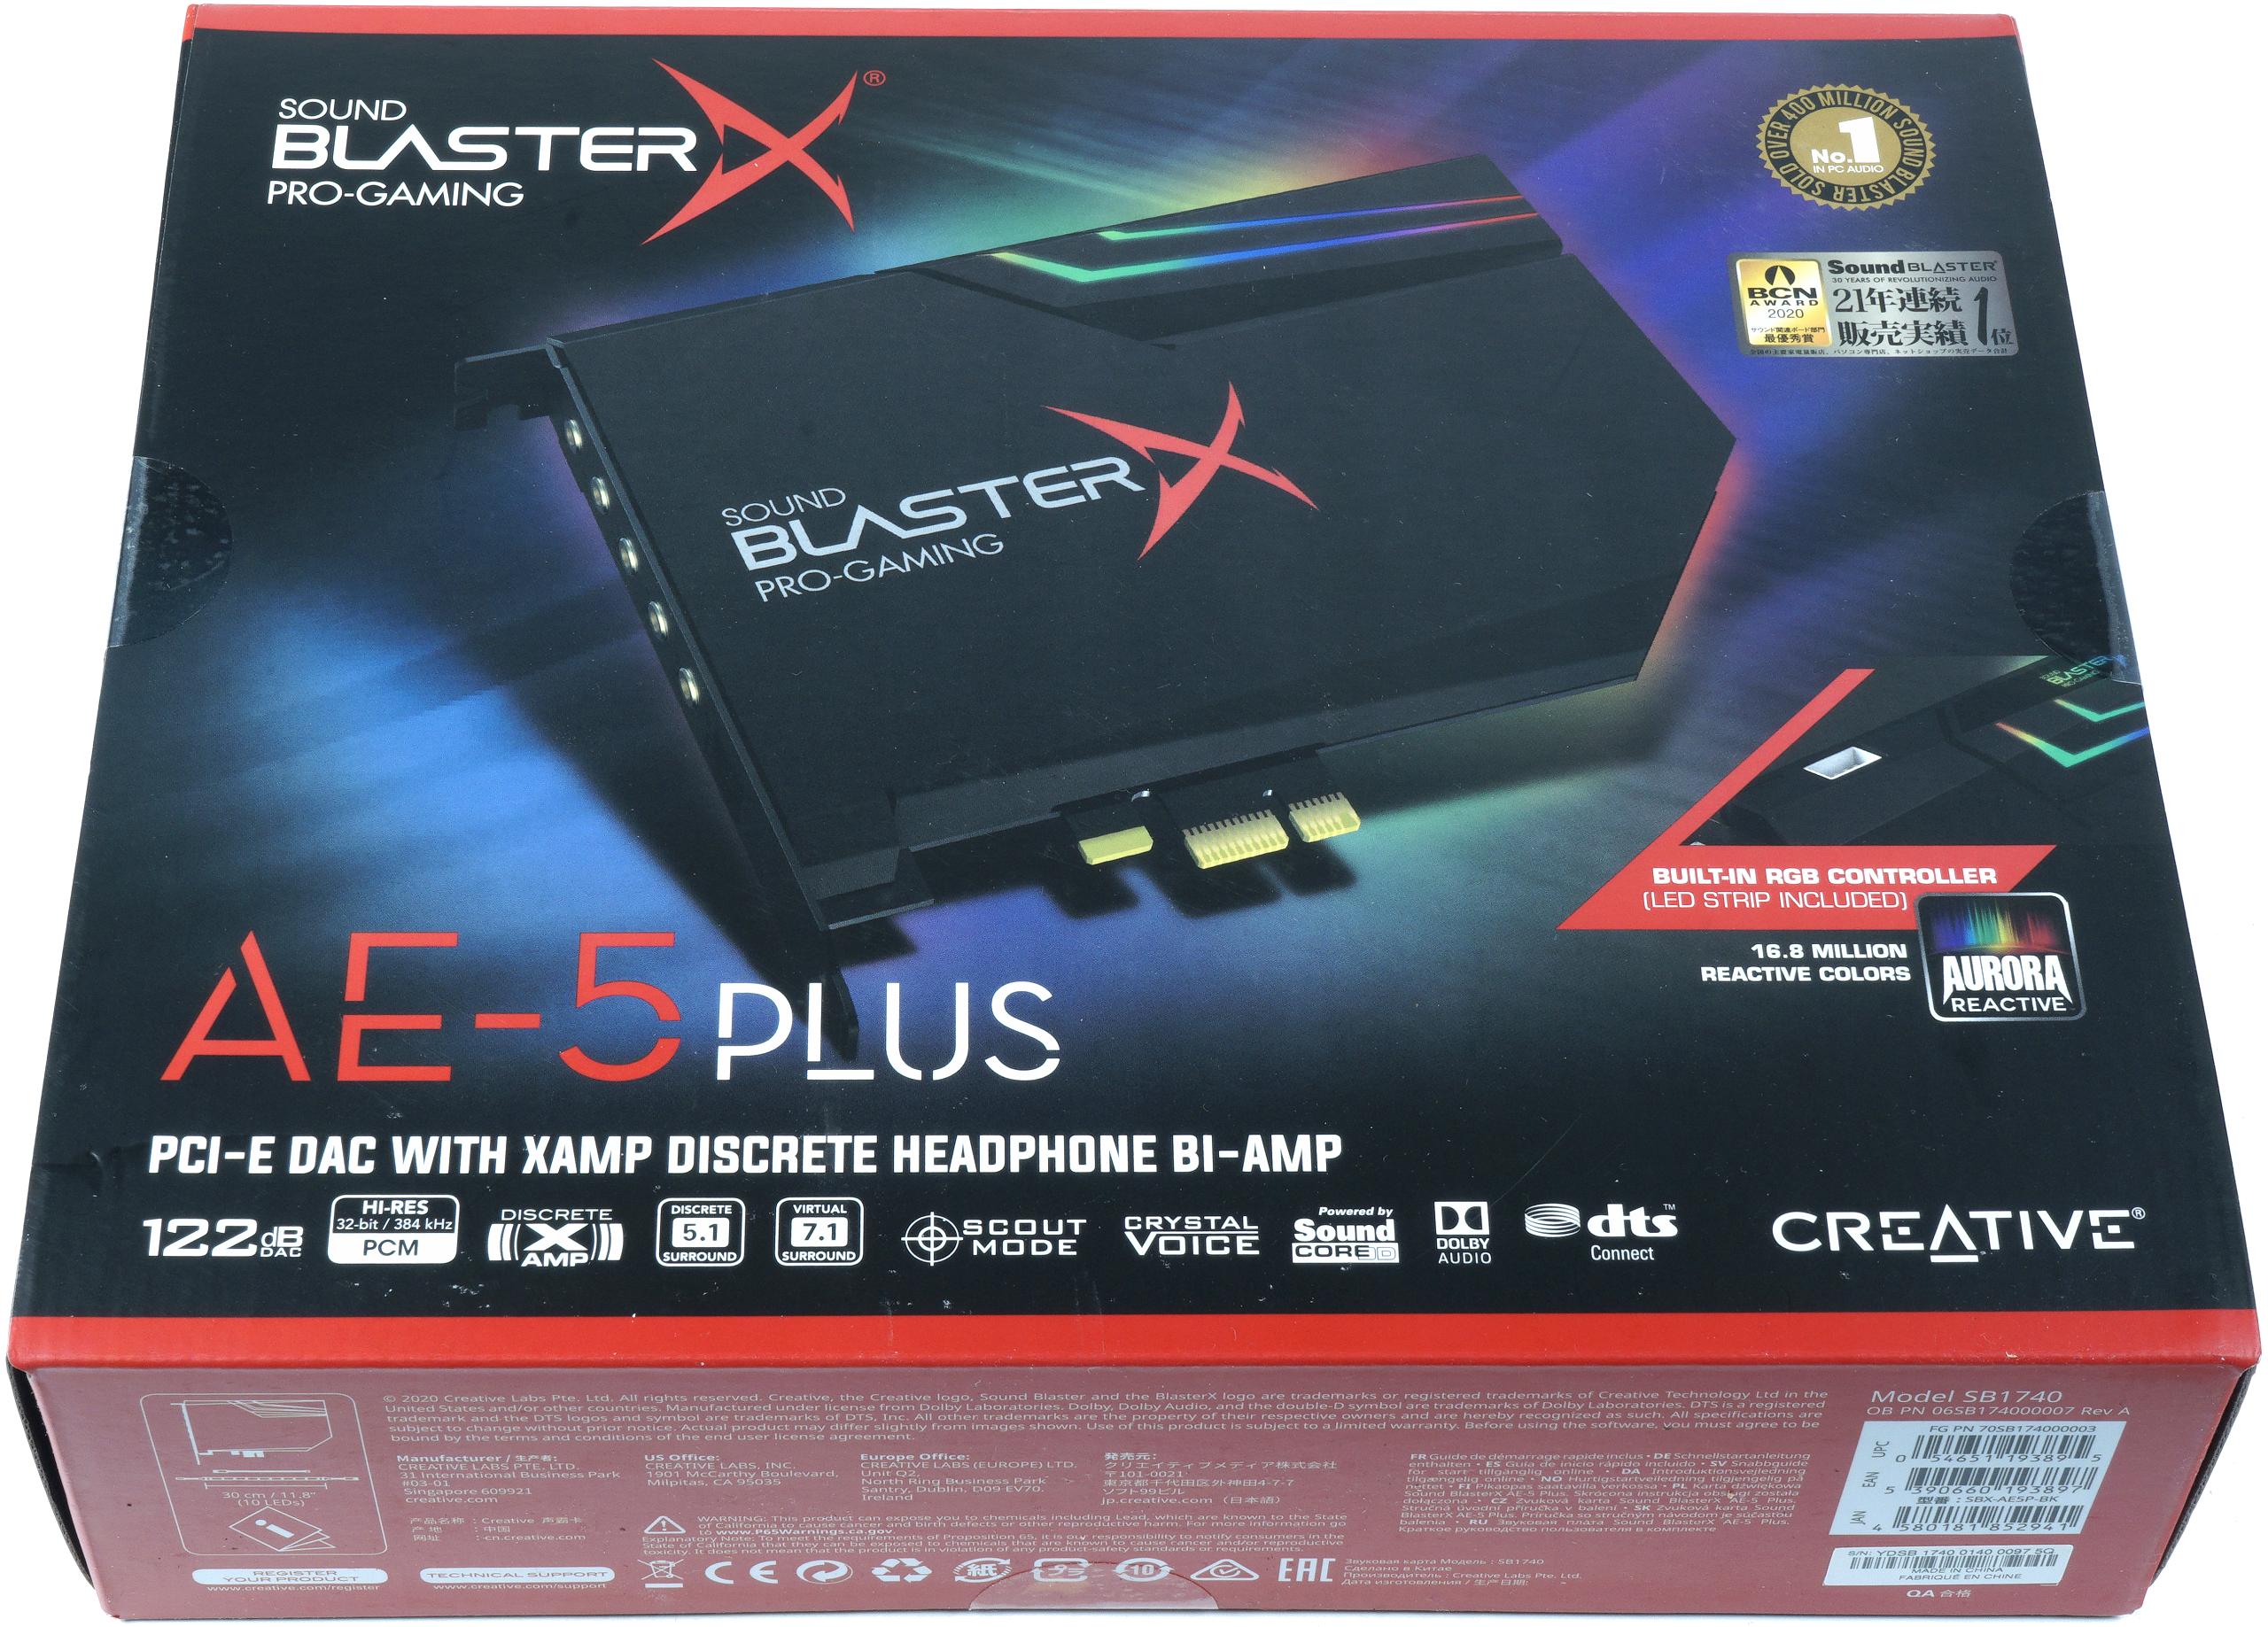 mit | - BlasterX Sound ein Creative Community Wumms viel Reviews Langzeittest igor´sLAB Upgrade Live AE-5 Dolby - und im Digital Plus und DTS